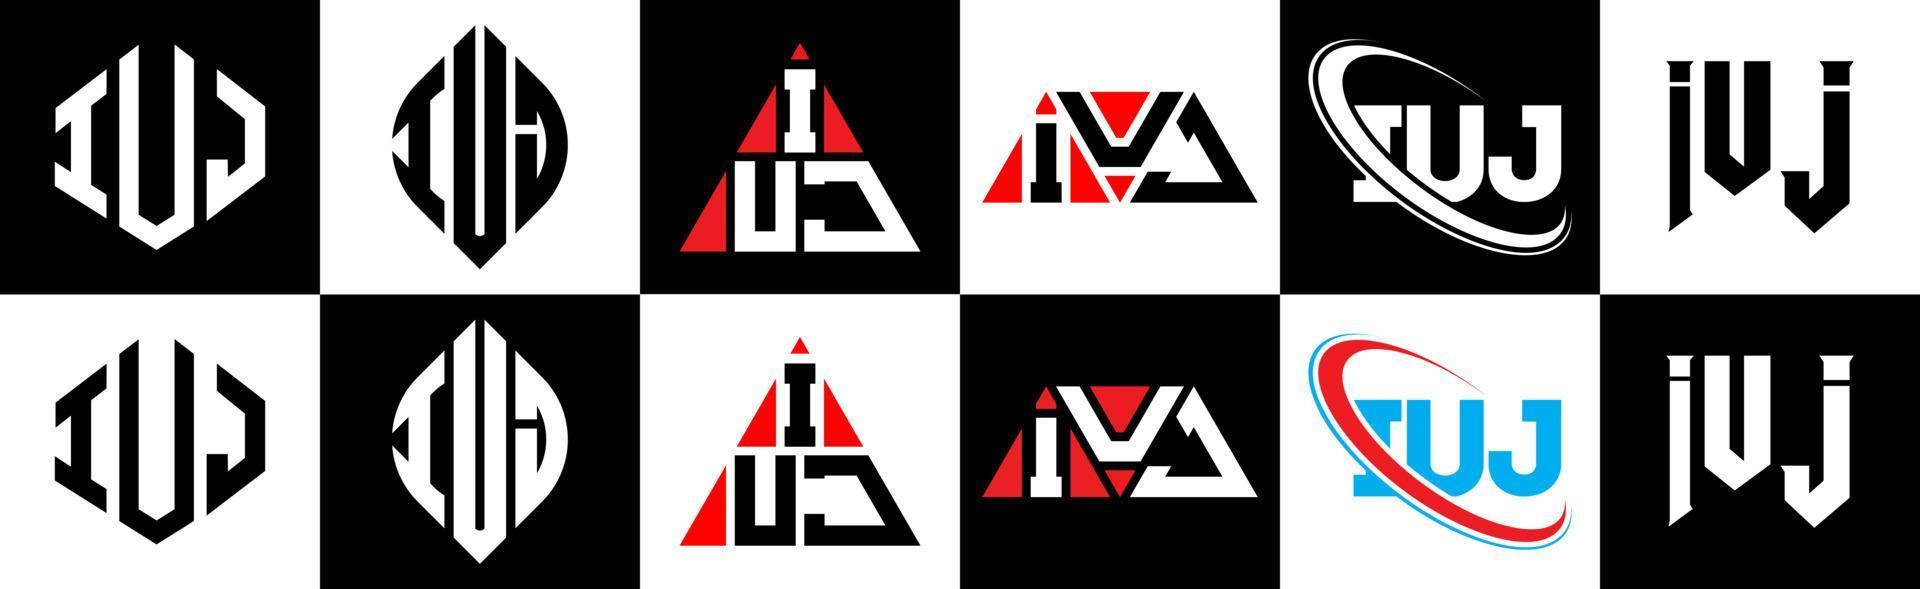 création de logo de lettre iuj en six styles. iuj polygone, cercle, triangle, hexagone, style plat et simple avec logo de lettre de variation de couleur noir et blanc dans un plan de travail. iuj logo minimaliste et classique vecteur